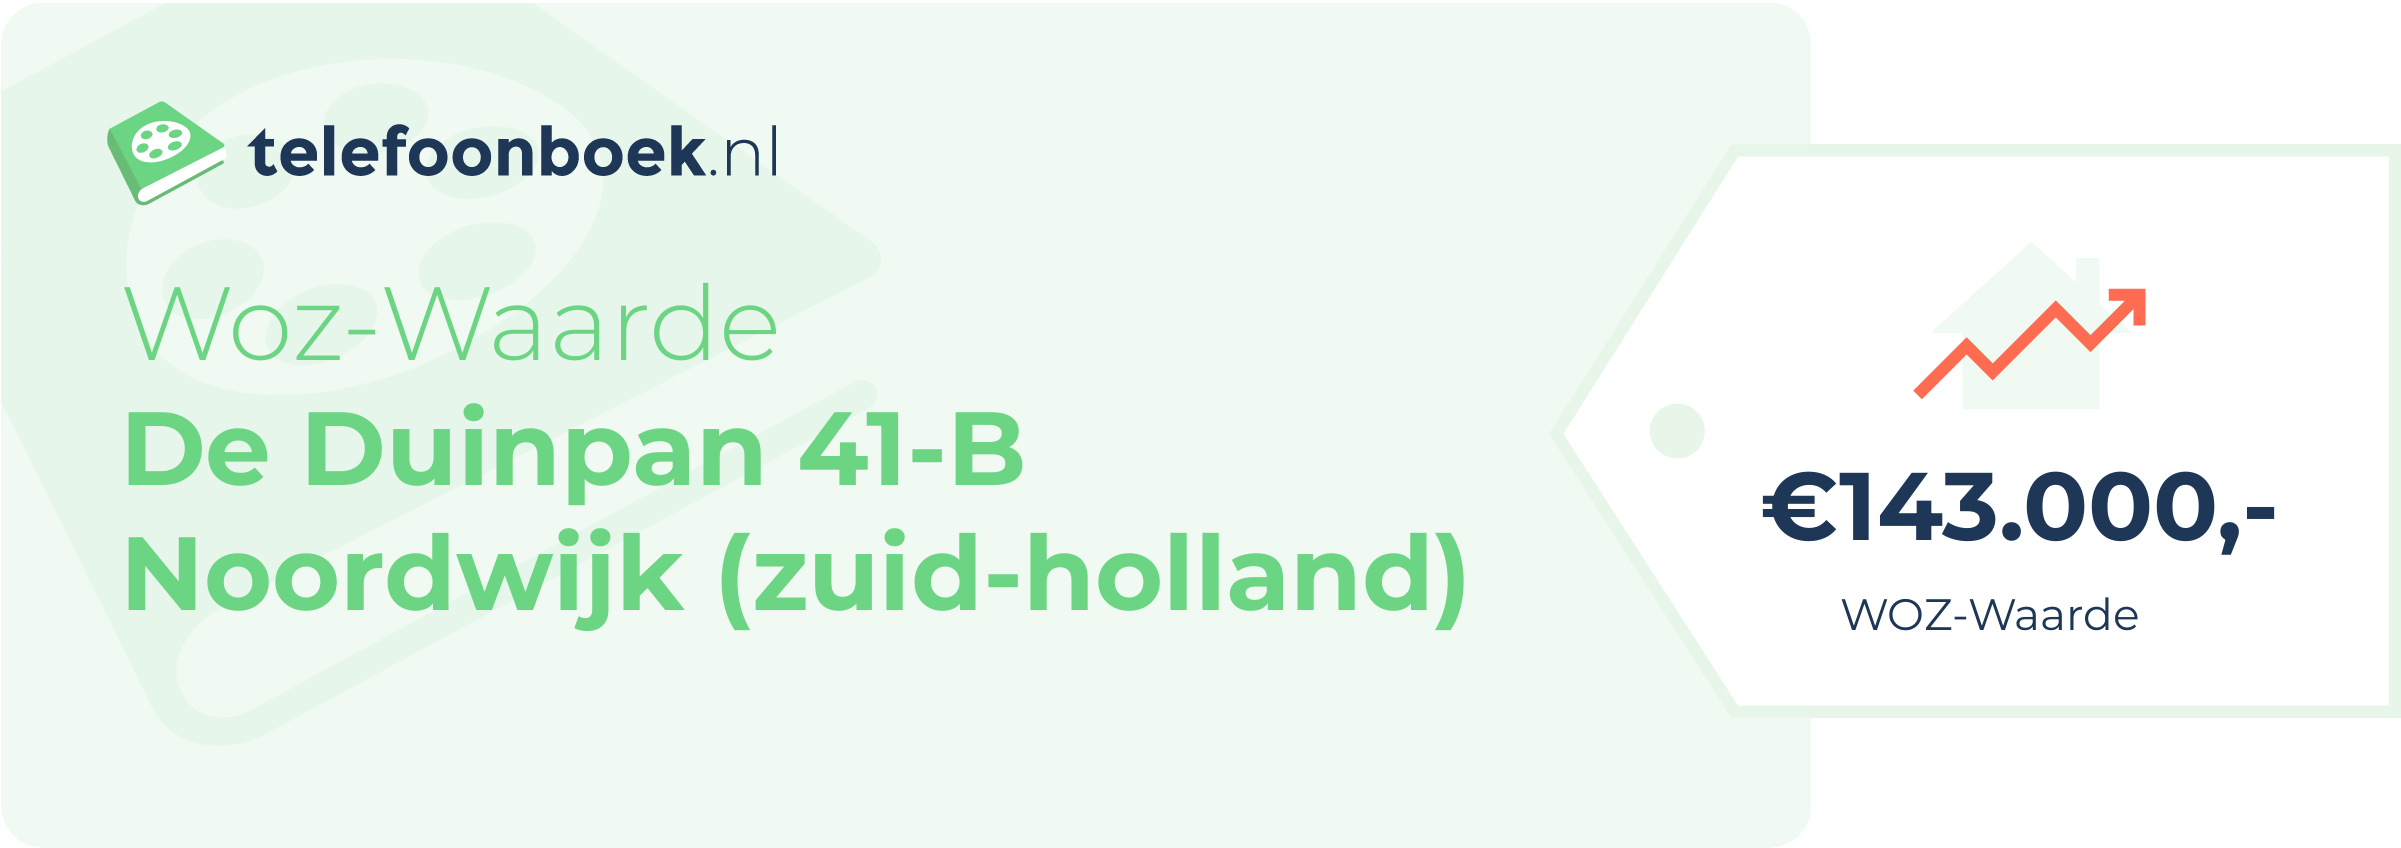 WOZ-waarde De Duinpan 41-B Noordwijk (Zuid-Holland)